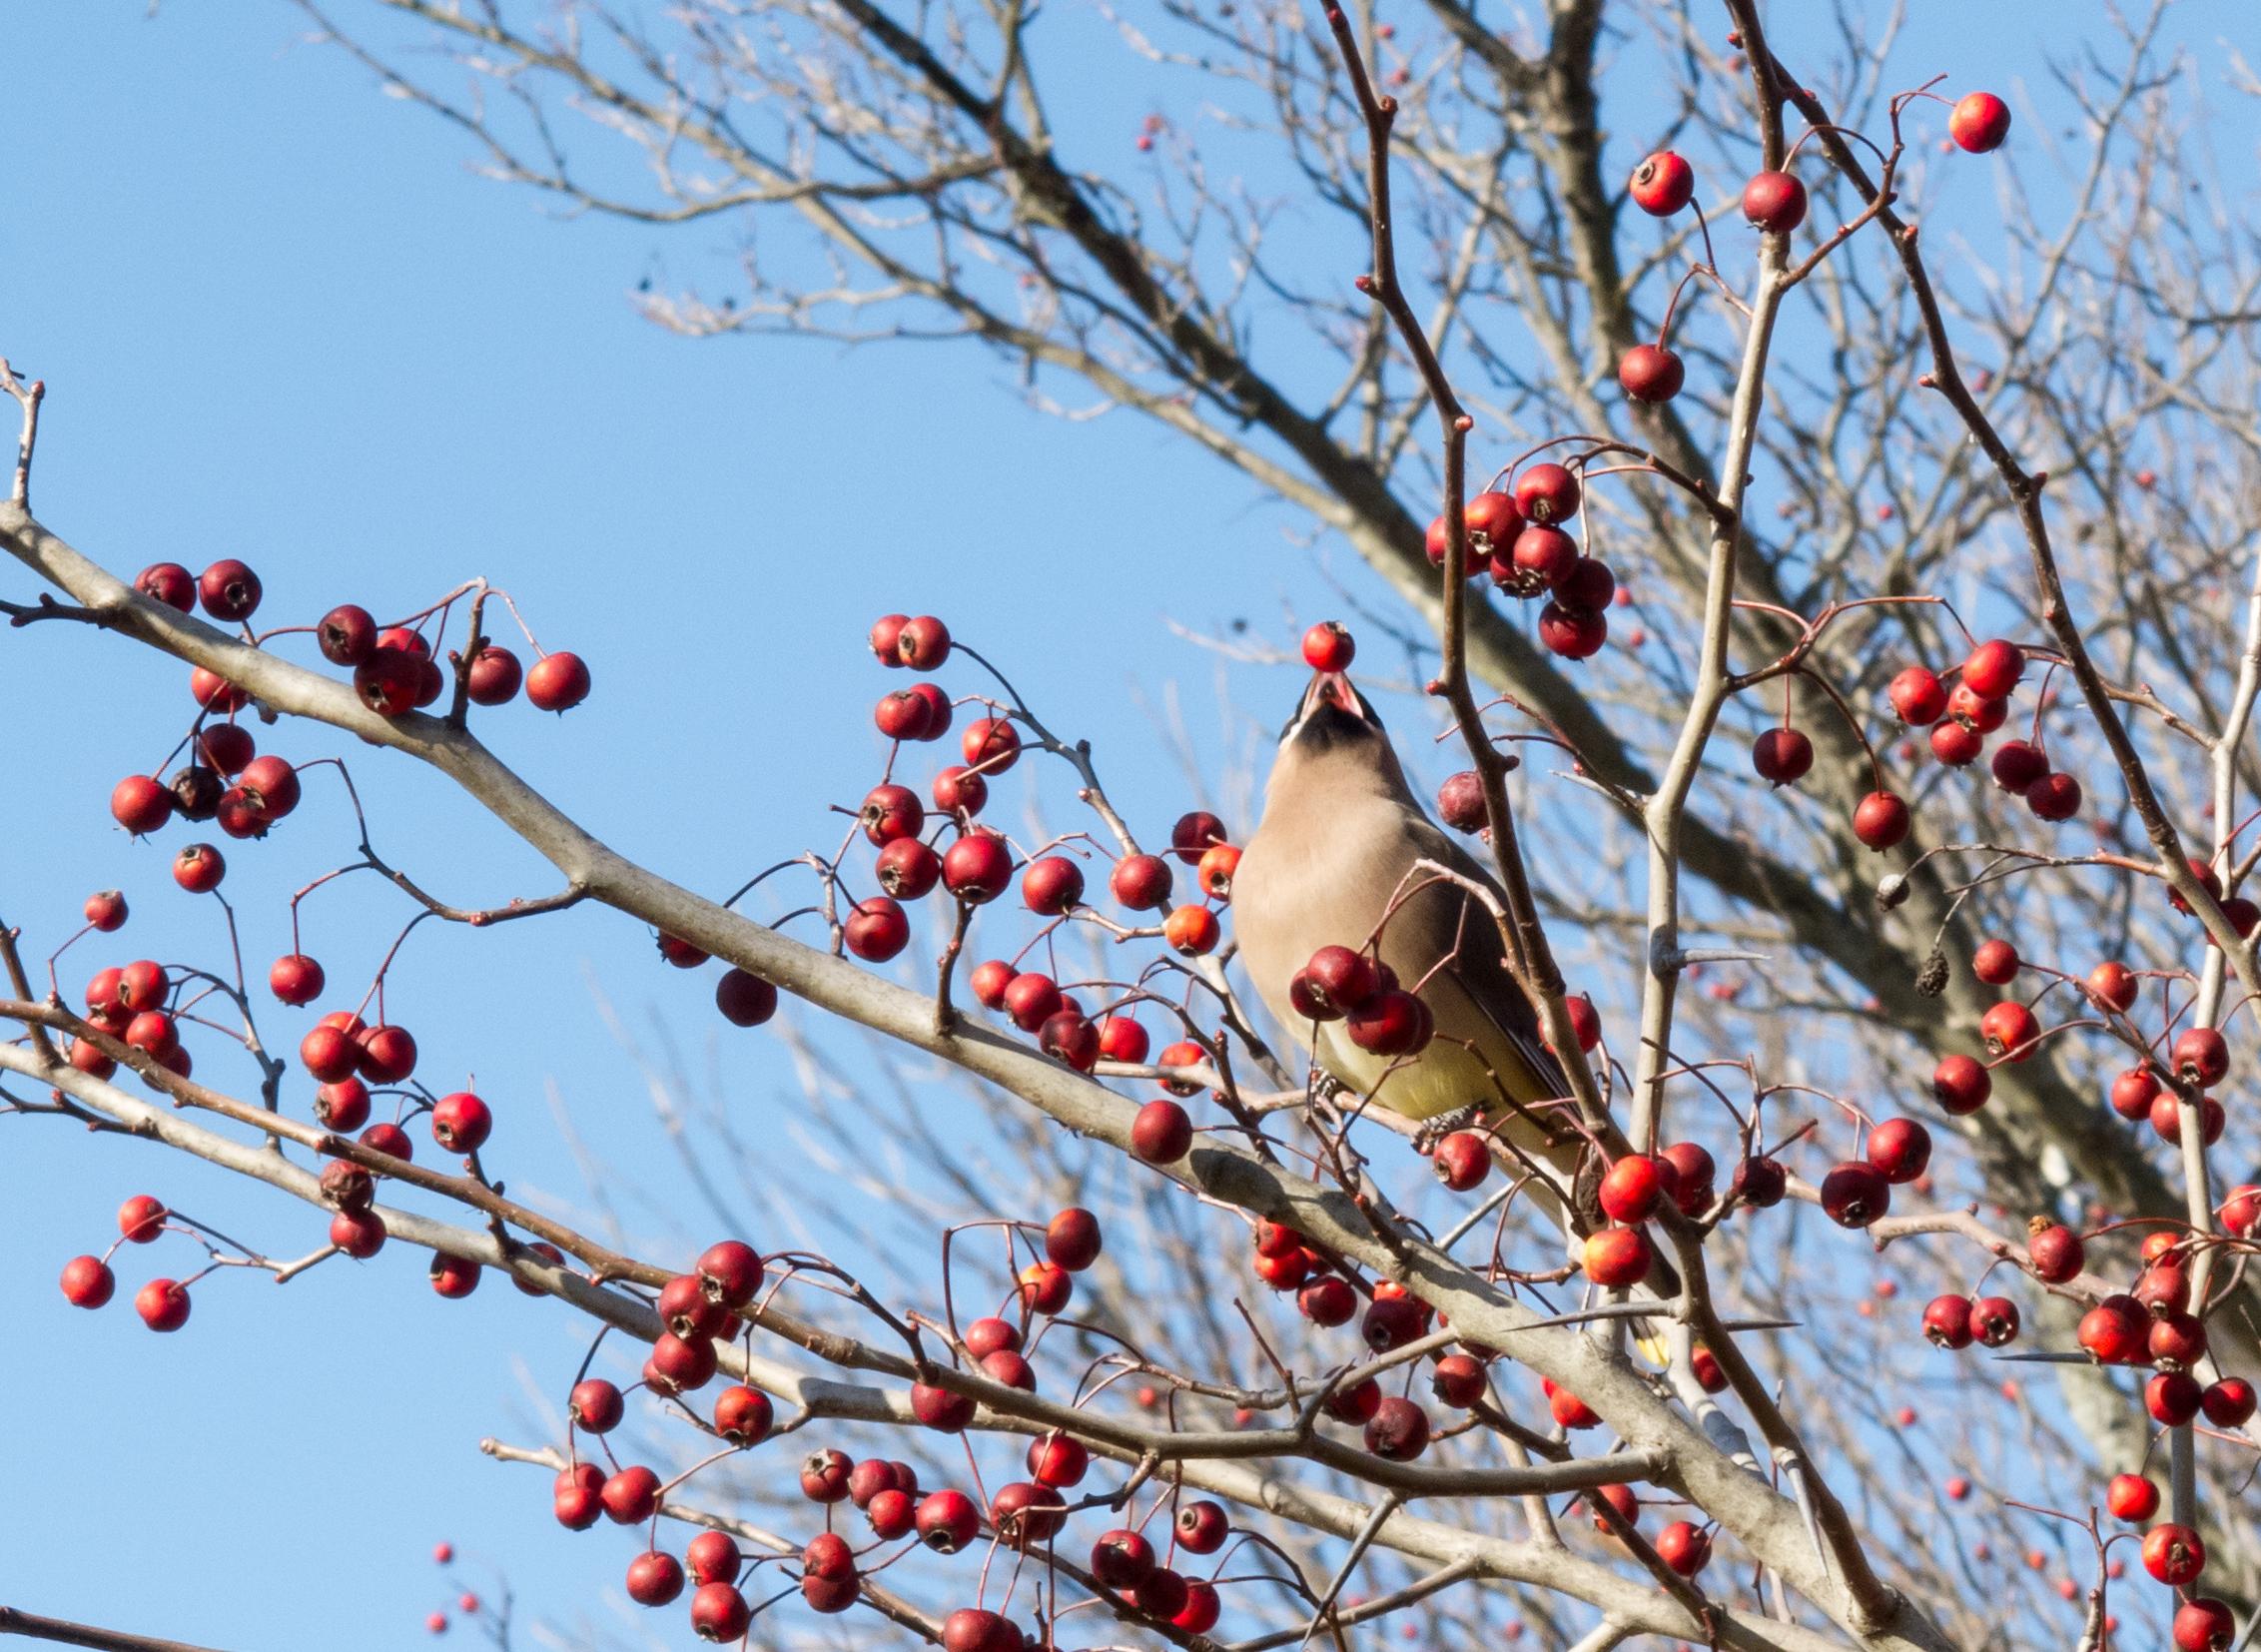 cedar waxwing bird eating berries on a hawthorn tree